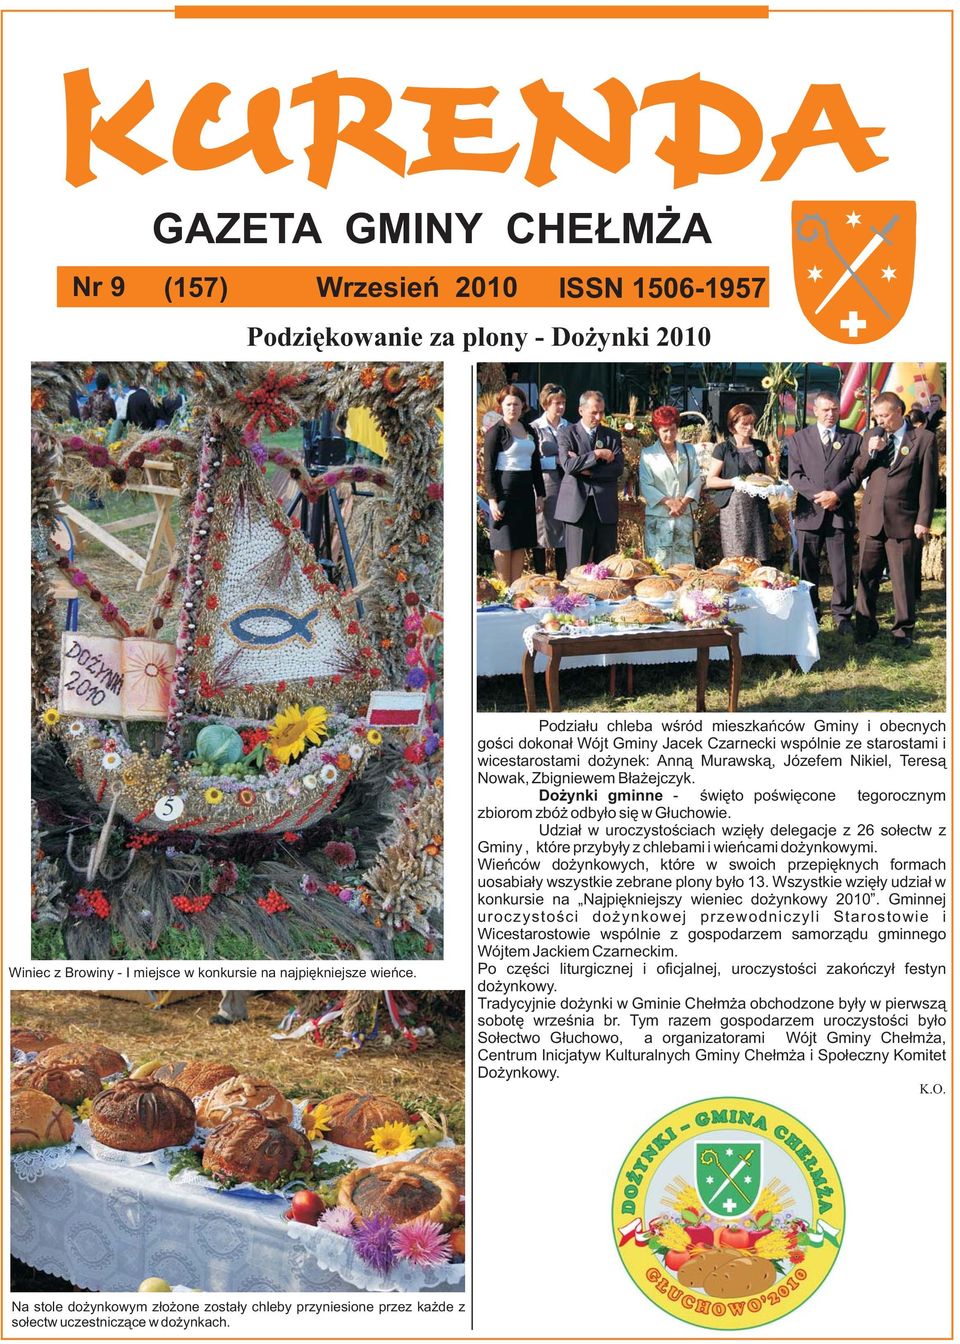 Błażejczyk. Dożynki gminne - święto poświęcone tegorocznym zbiorom zbóż odbyło się w Głuchowie.